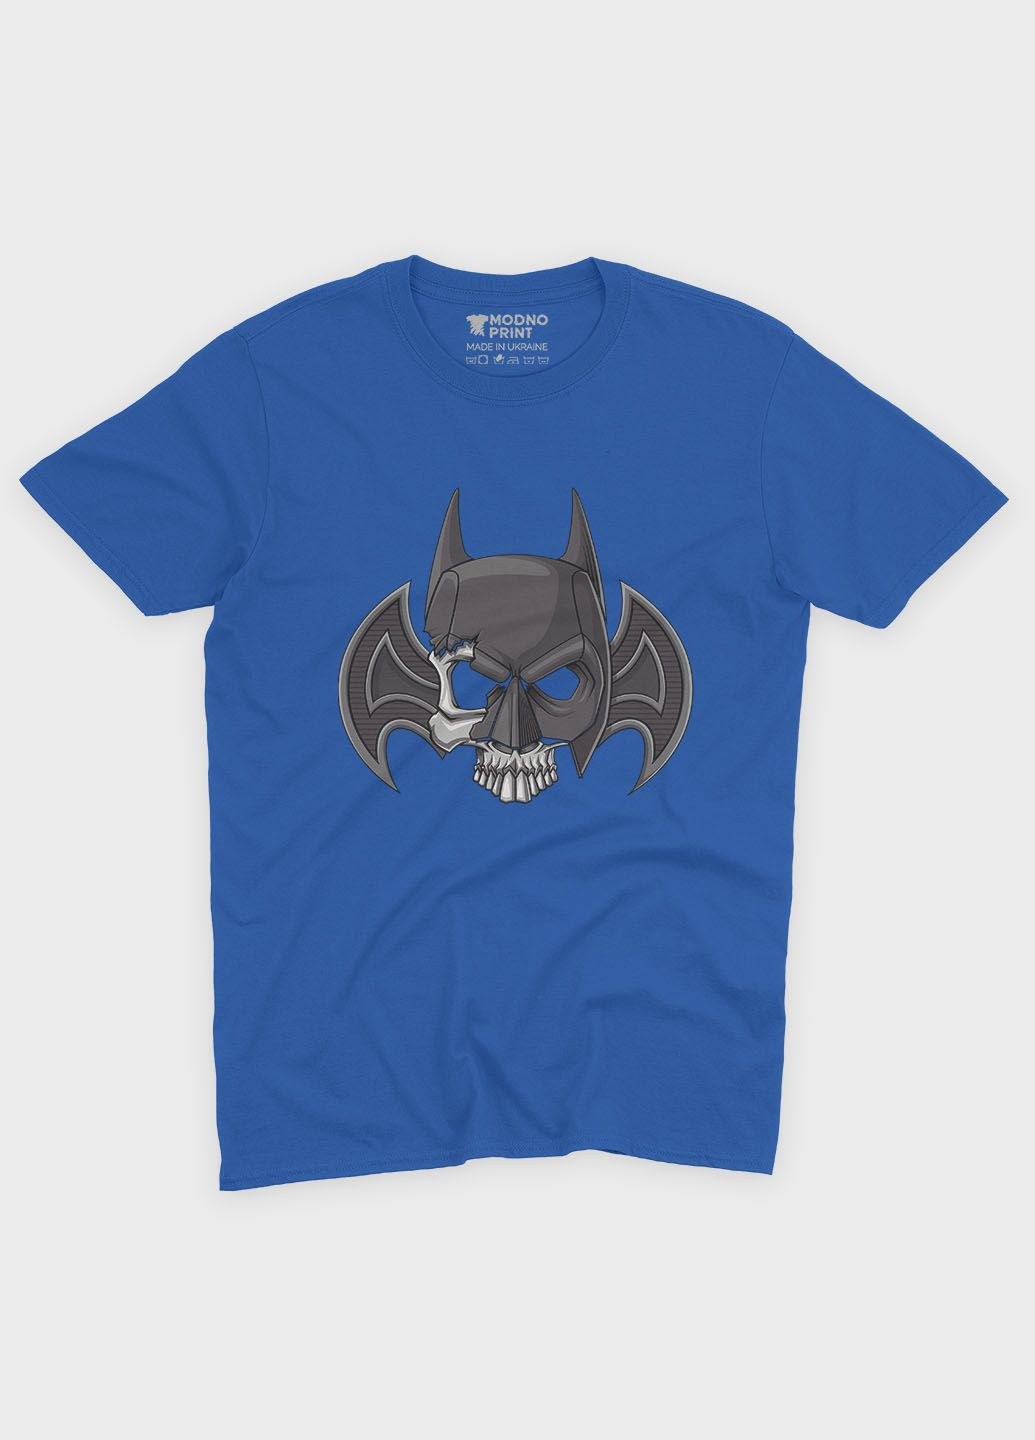 Синяя демисезонная футболка для девочки с принтом супергероя - бэтмен (ts001-1-grr-006-003-005-g) Modno